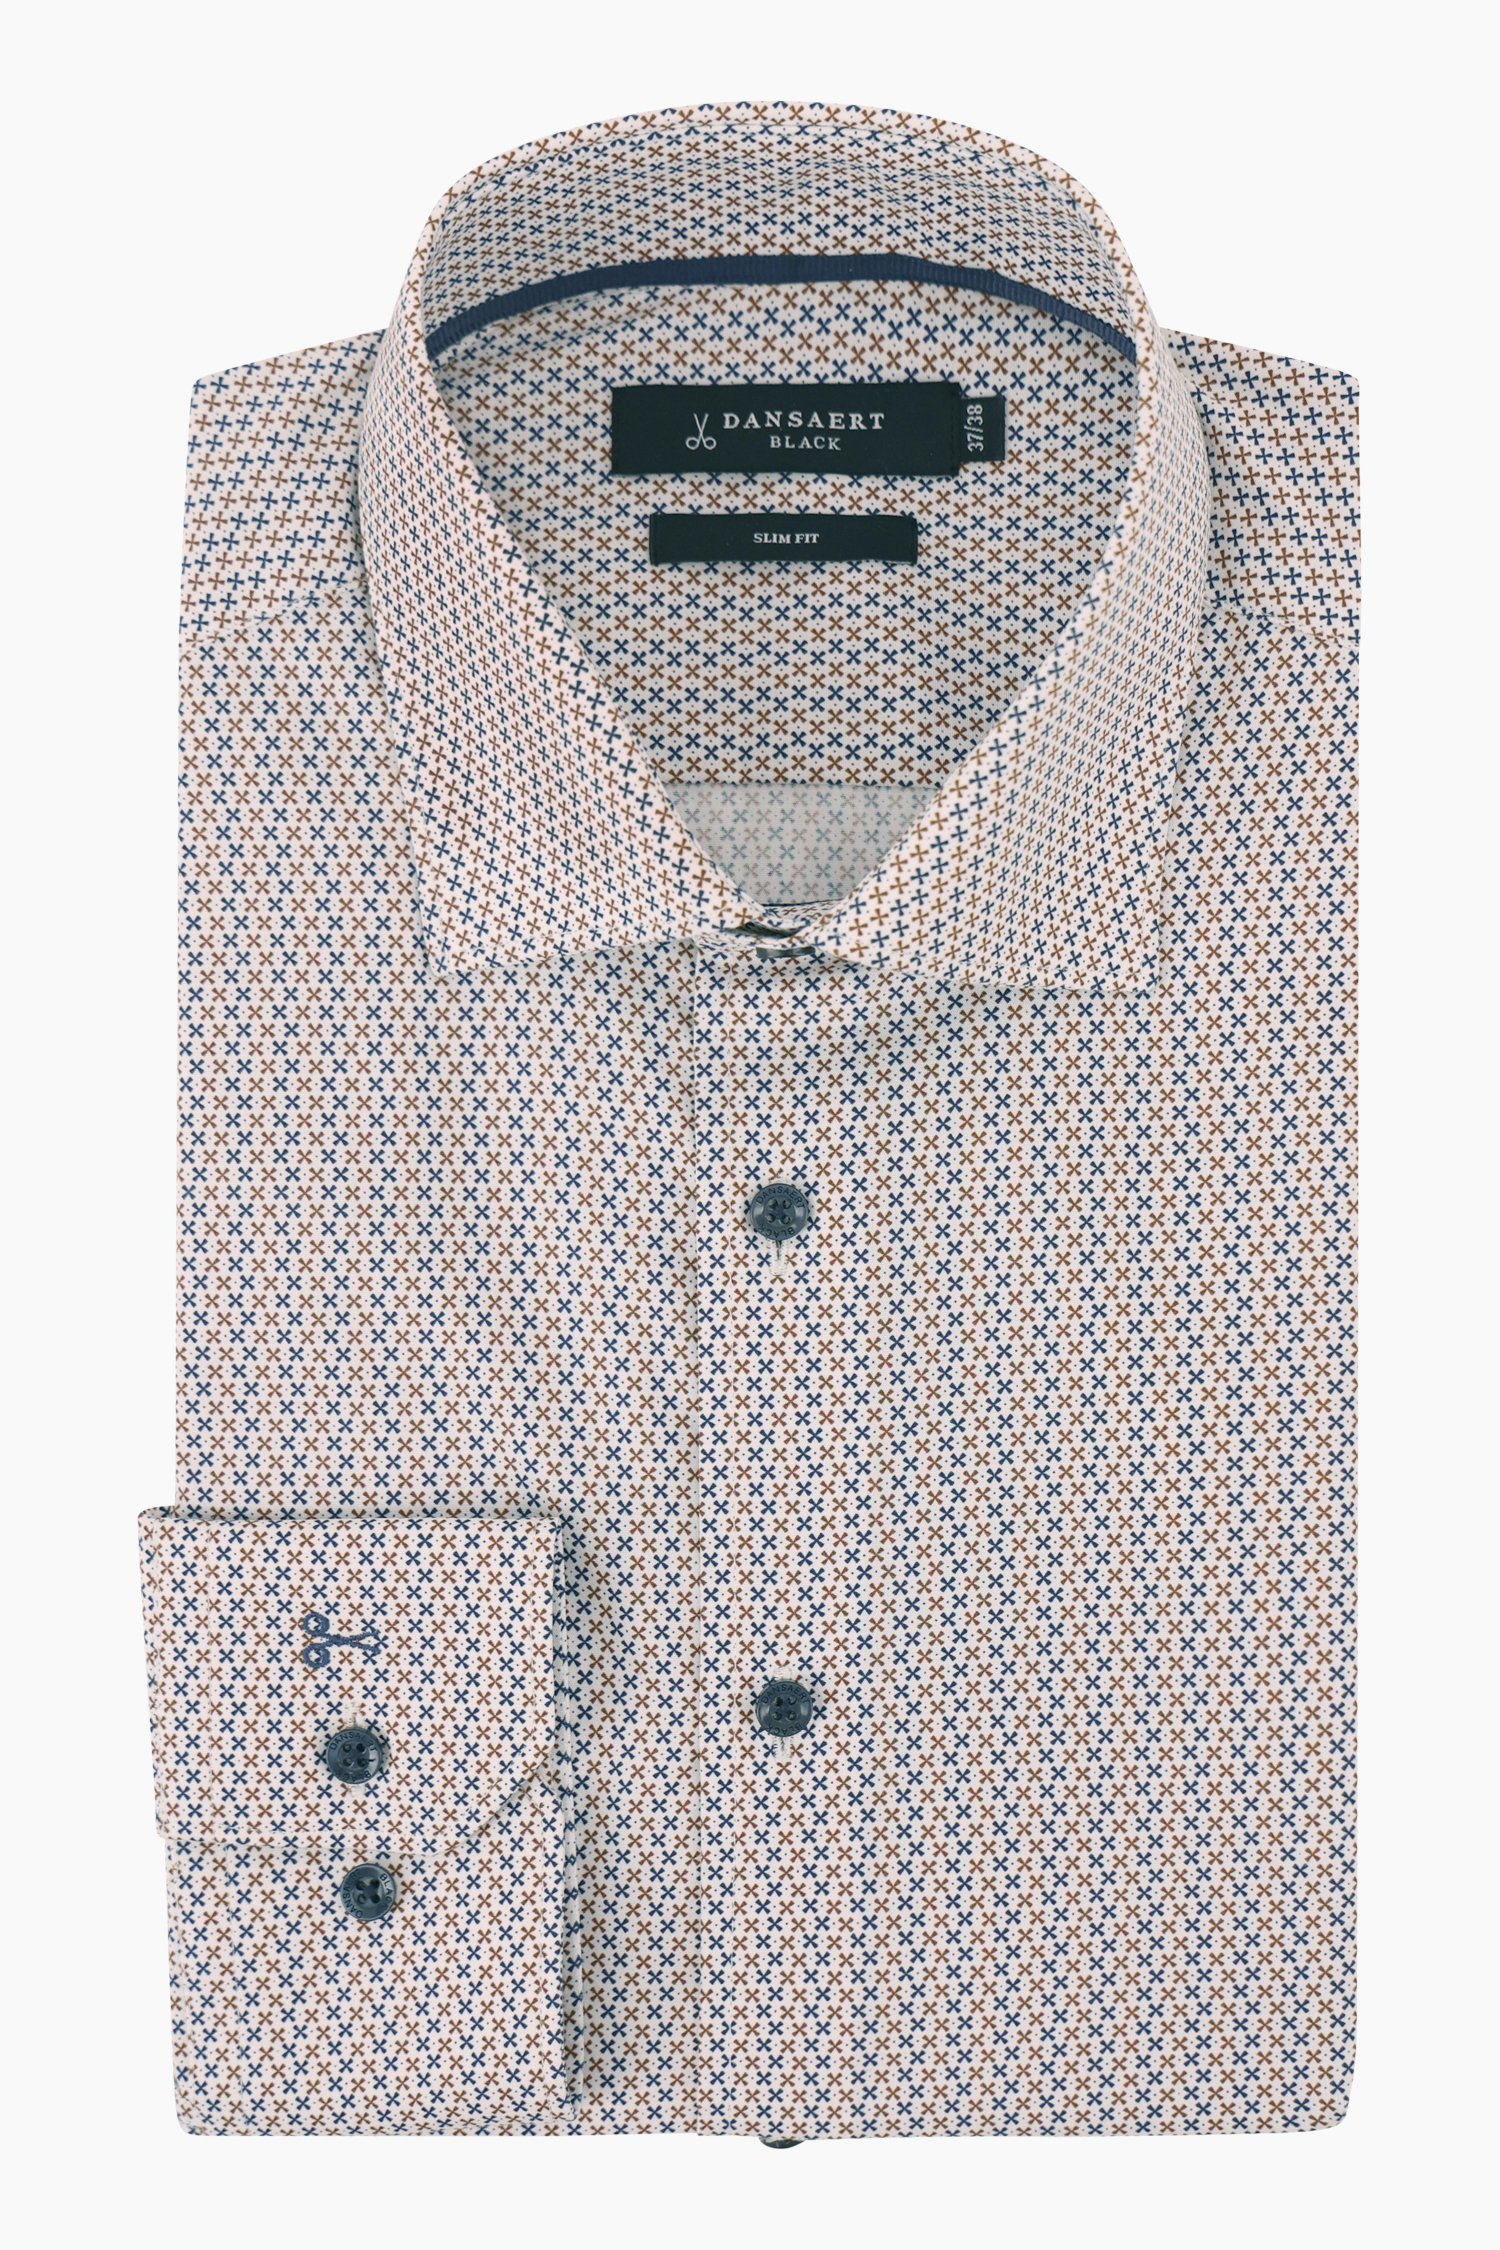 Wit hemd met patroon - slim fit van Dansaert Black voor Heren